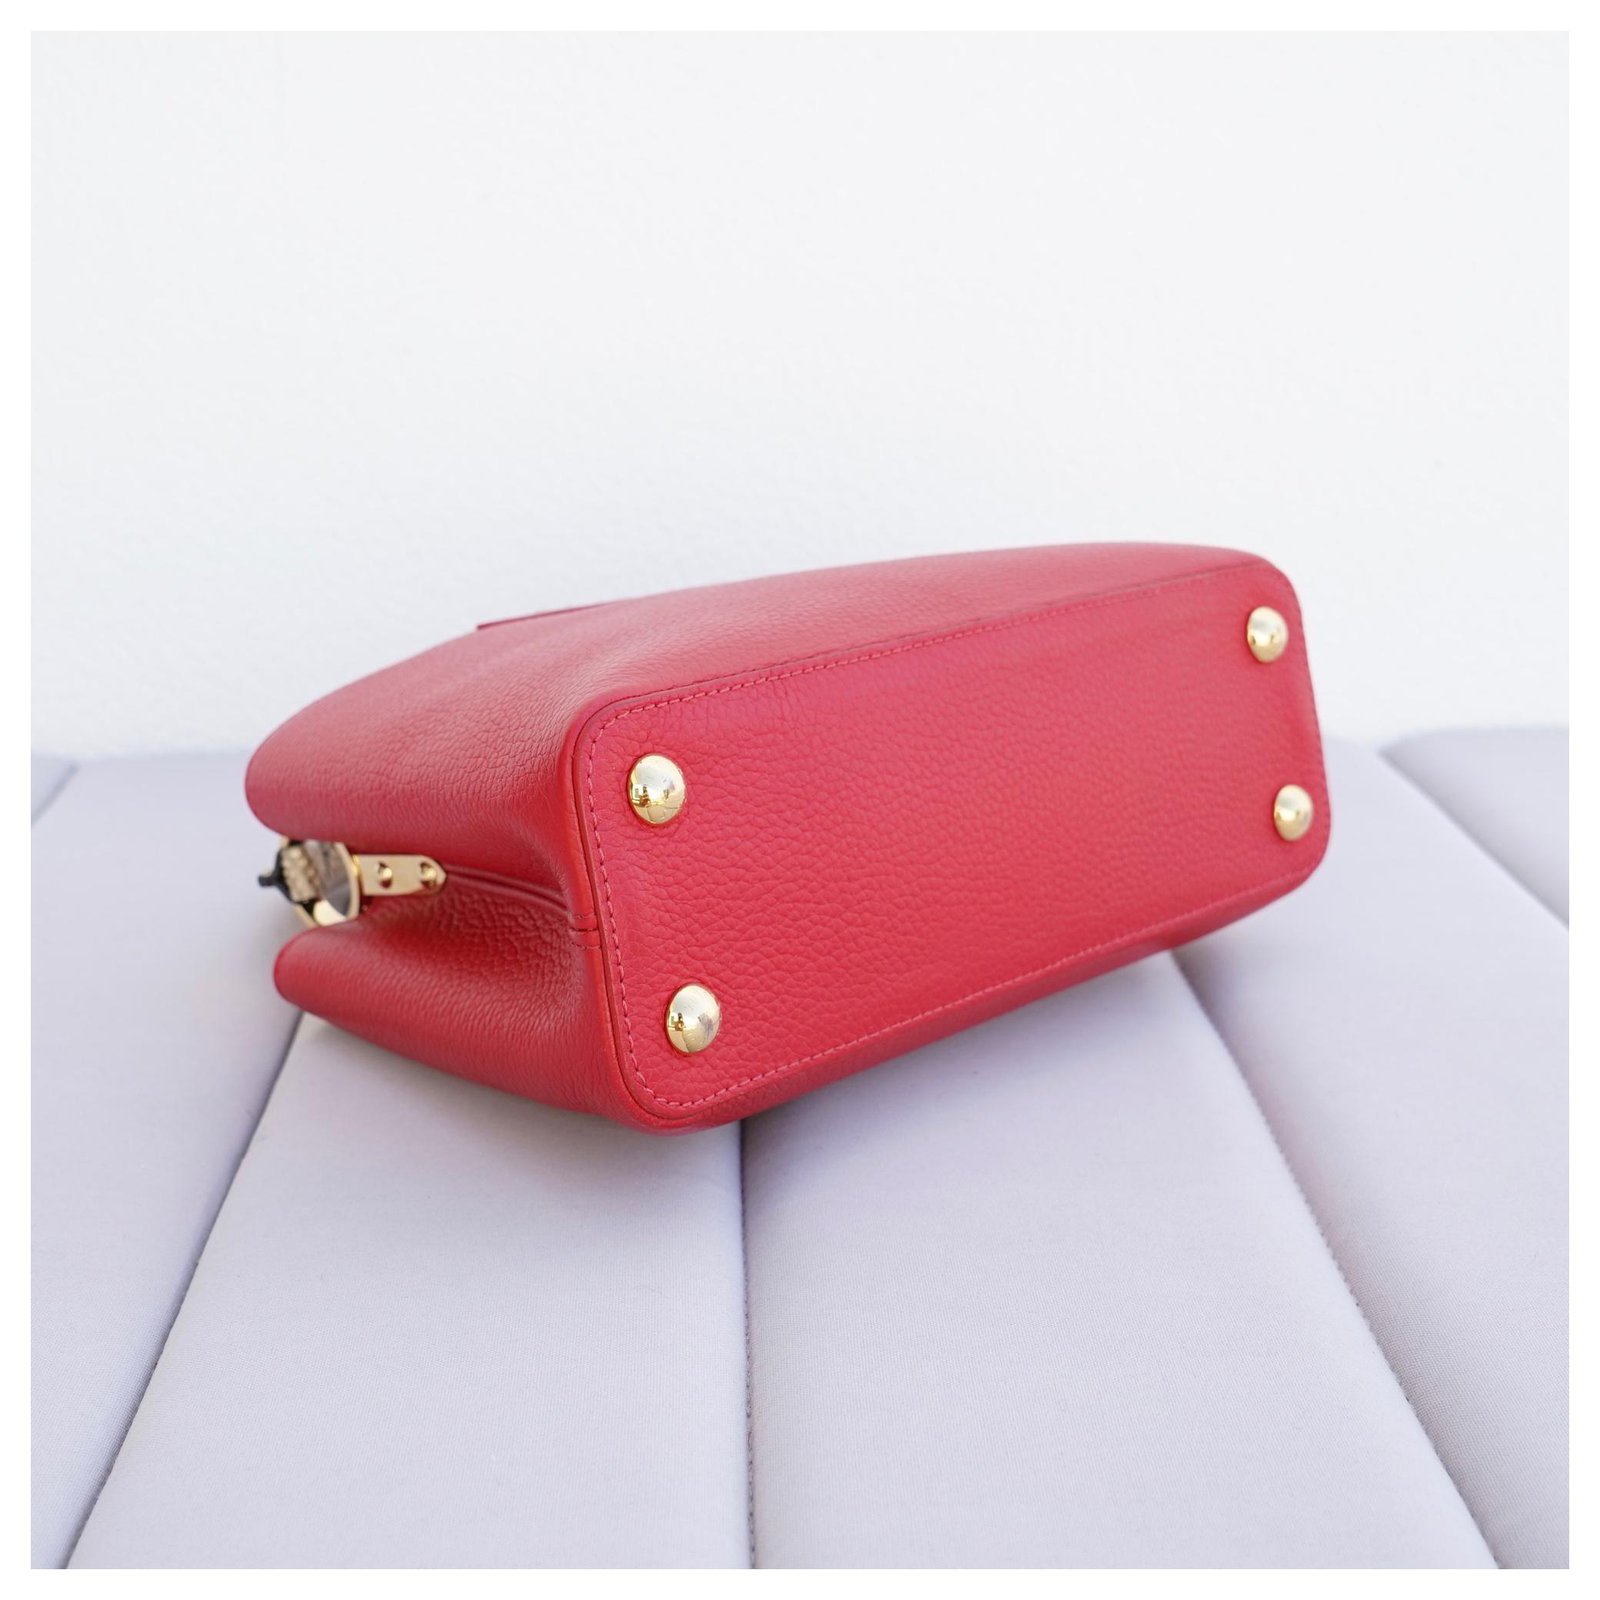 Louis Vuitton Red Capucines BB Bag W/ Python Details – The Closet